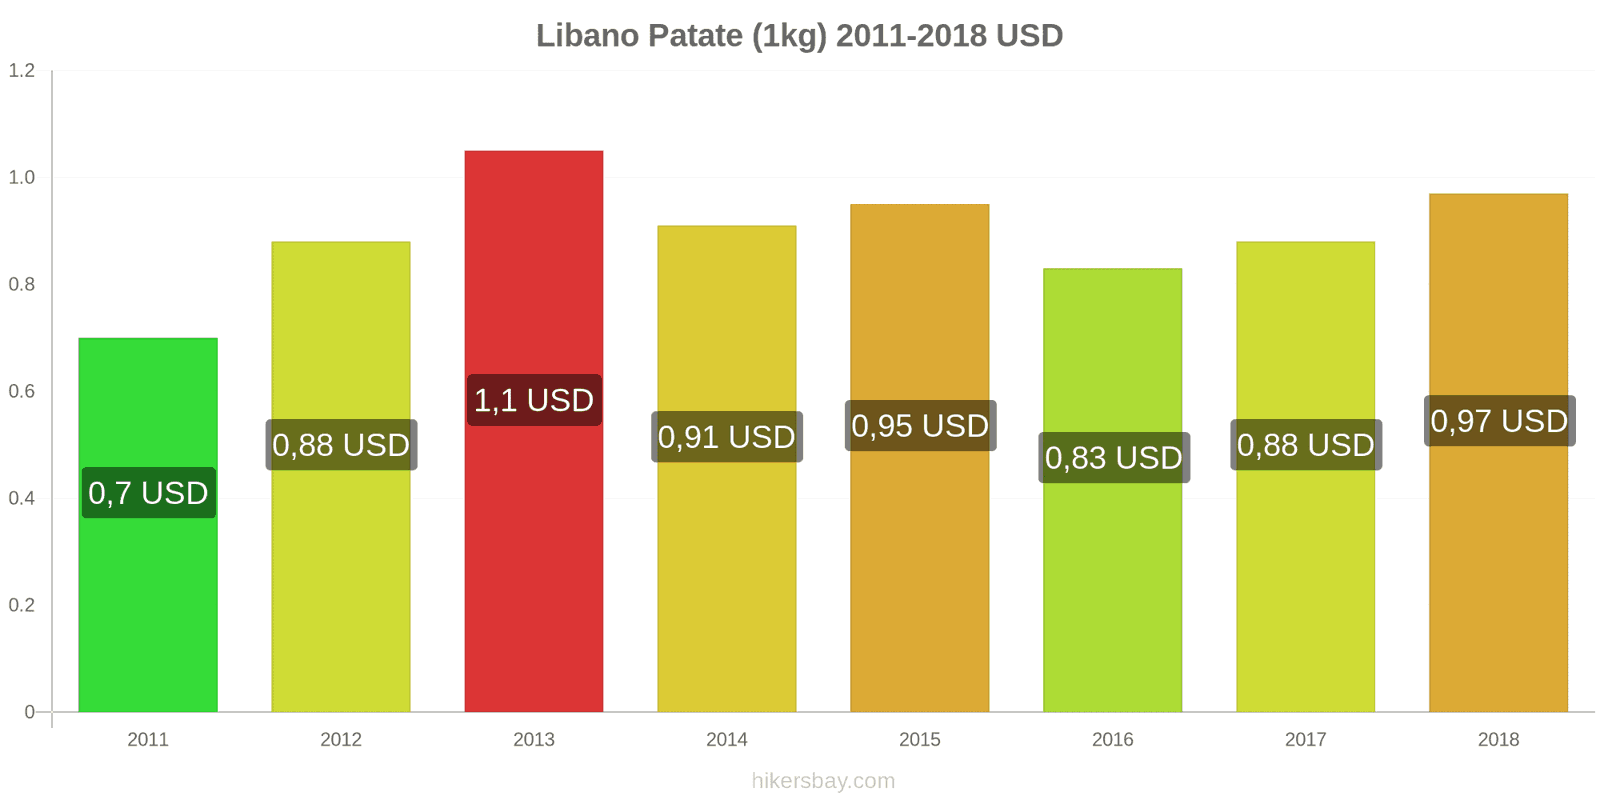 Libano cambi di prezzo Patate (1kg) hikersbay.com